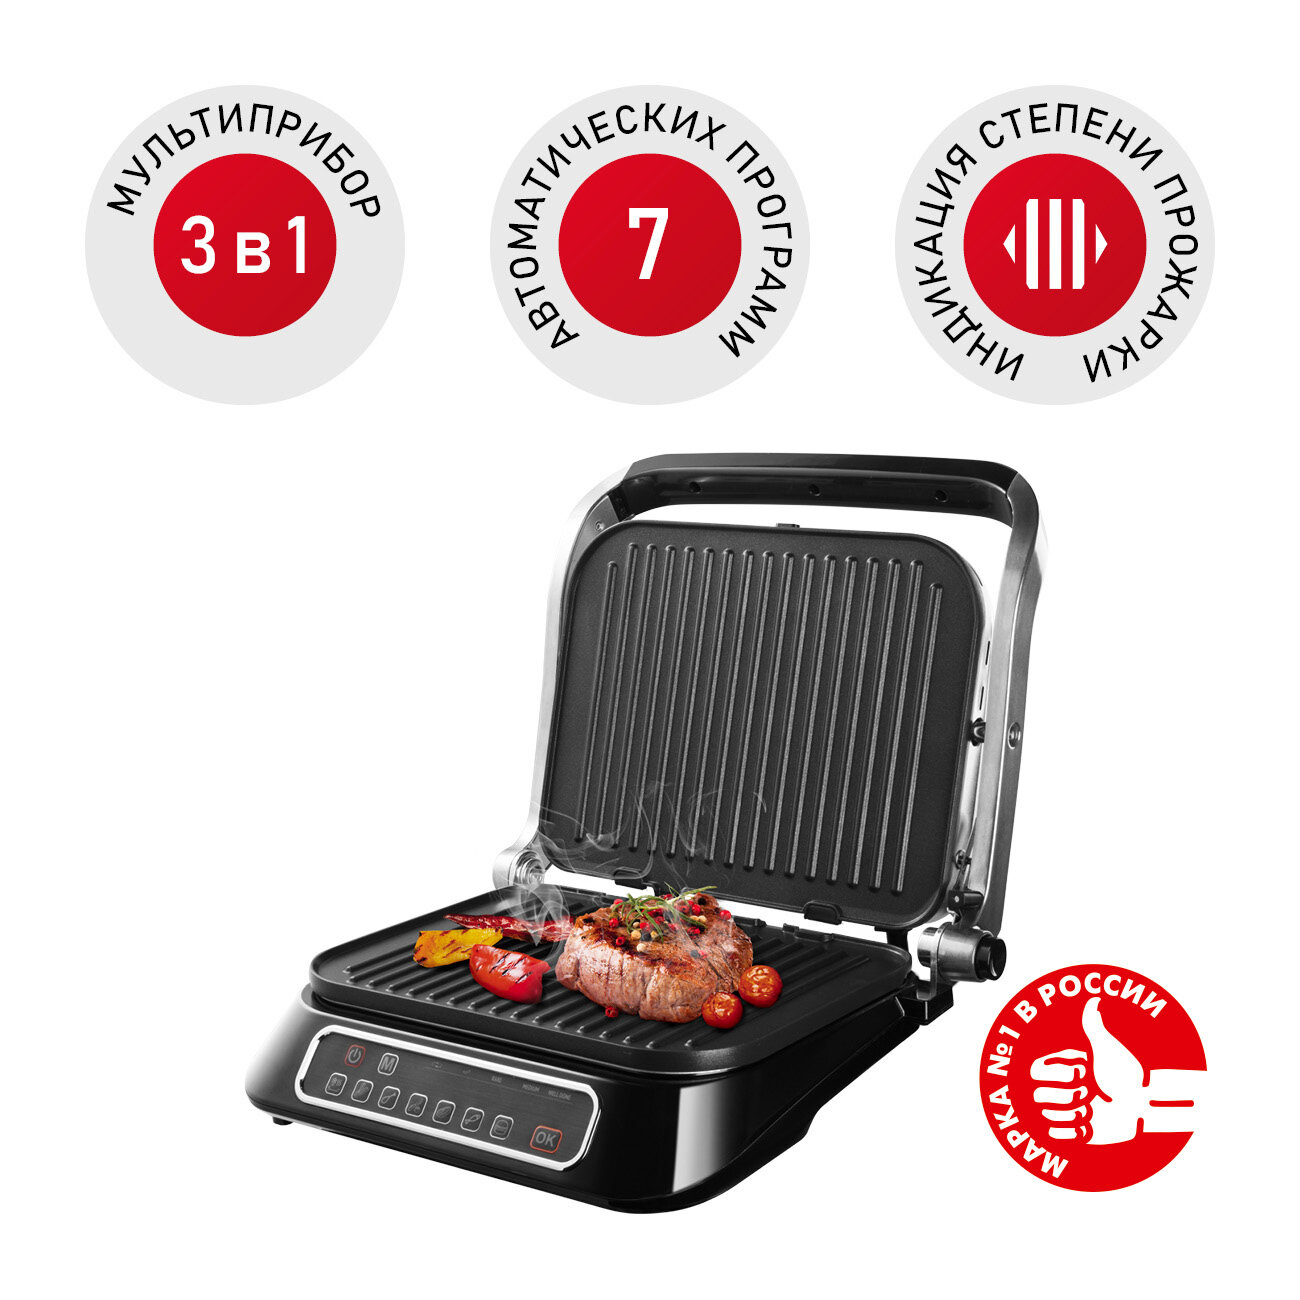 Гриль REDMOND SteakMaster RGM-M805